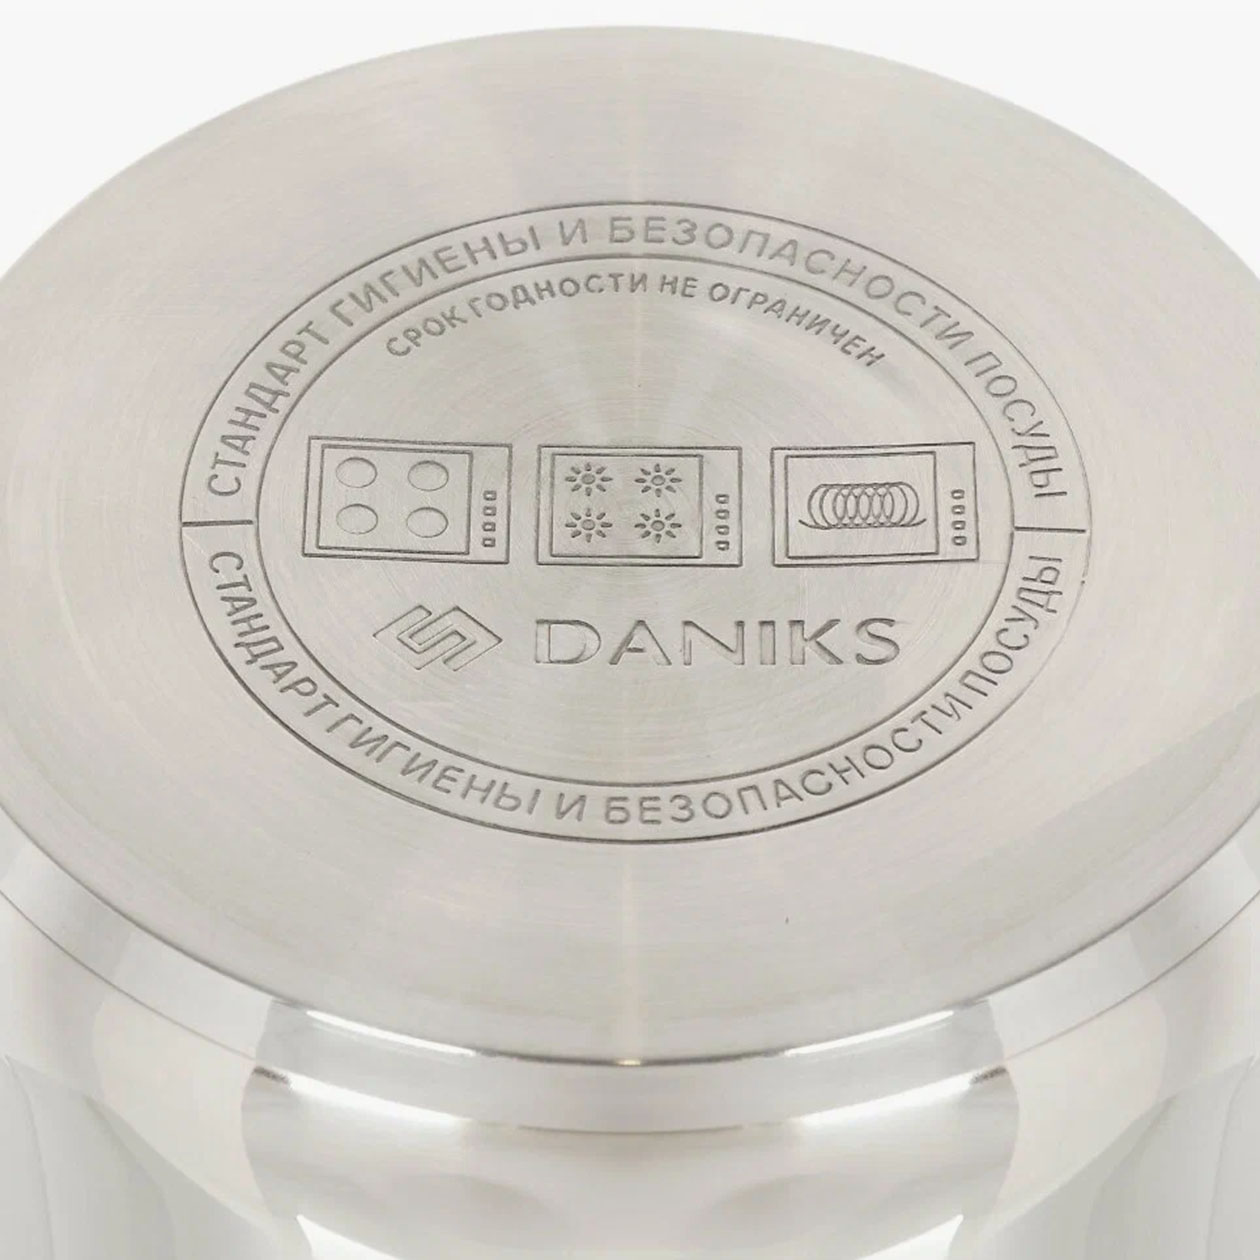 Четырехуровневая мантоварка Daniks также подходит для индукции — это обозначено на коробке и на самой посуде